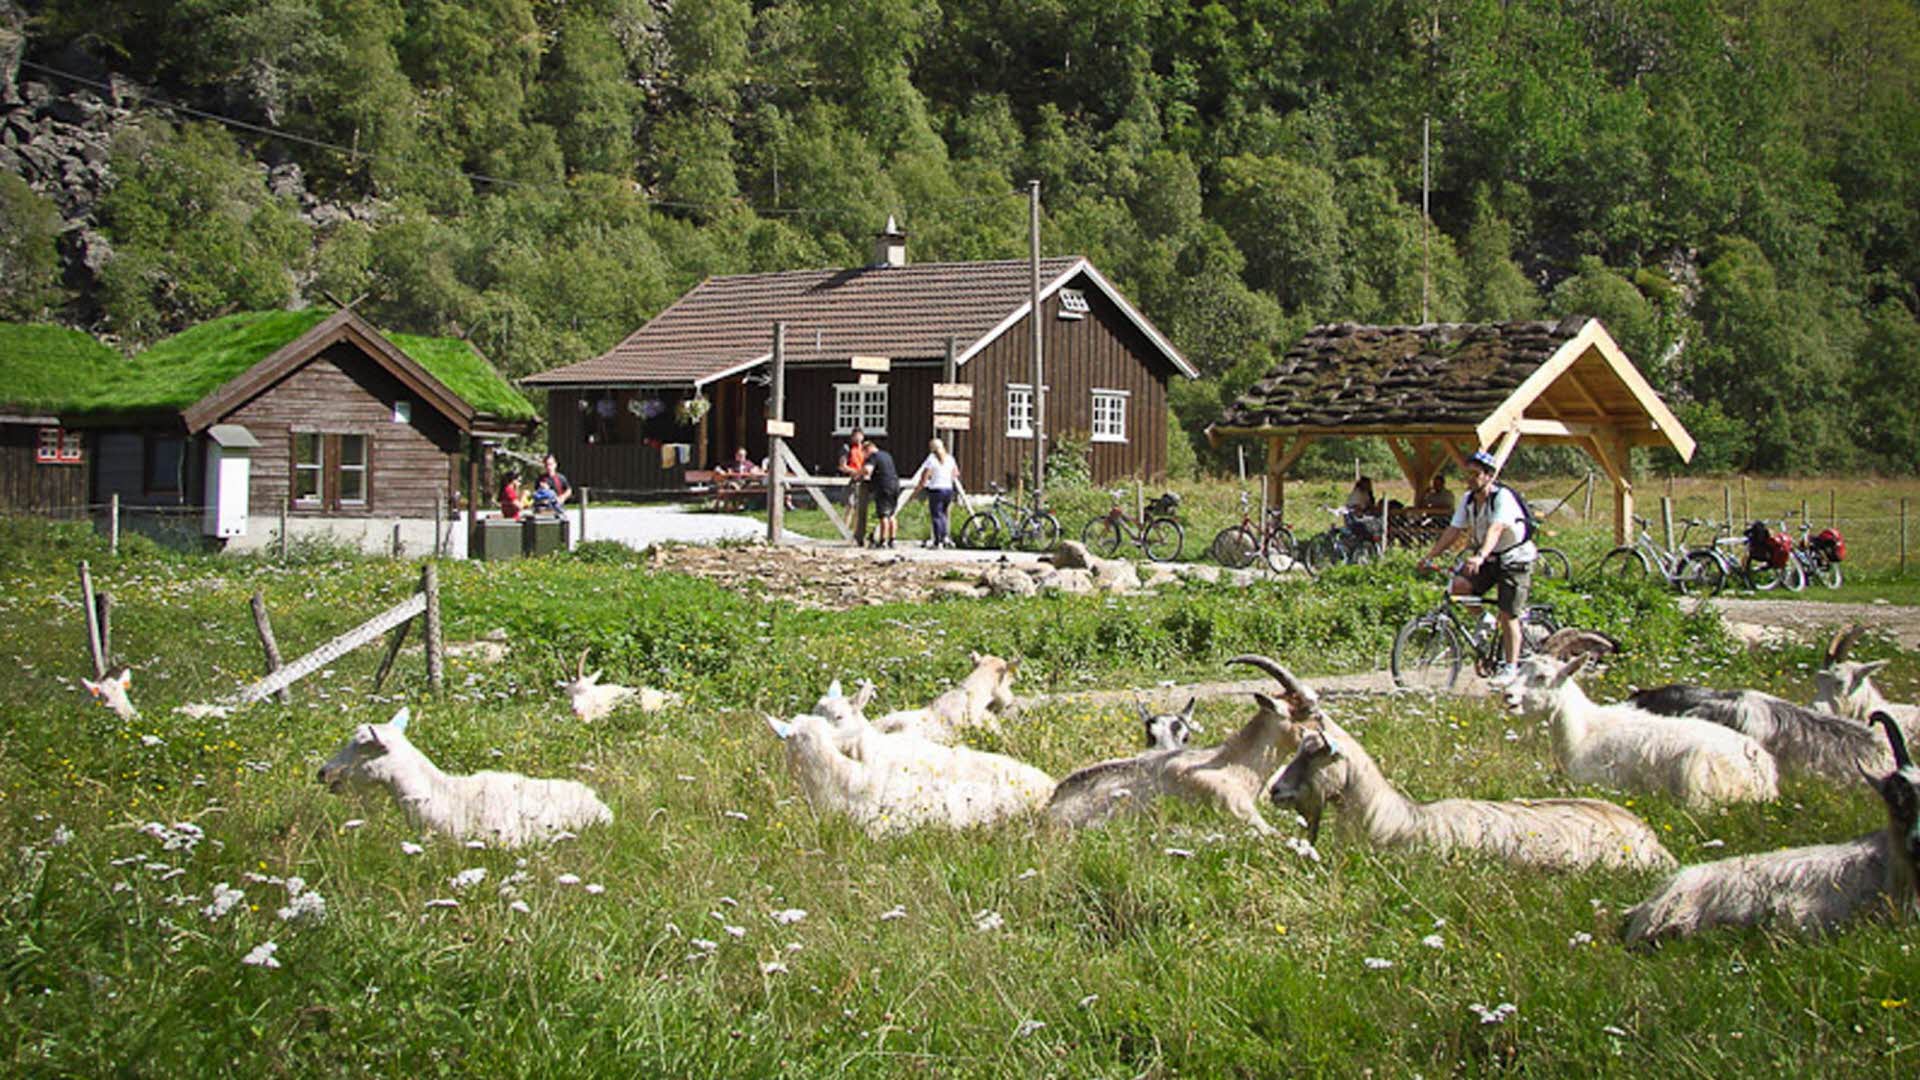 Rallarrosa Stølsysteri dans la vallée de Flåm, des personnes et des chèvres s’amusant dehors